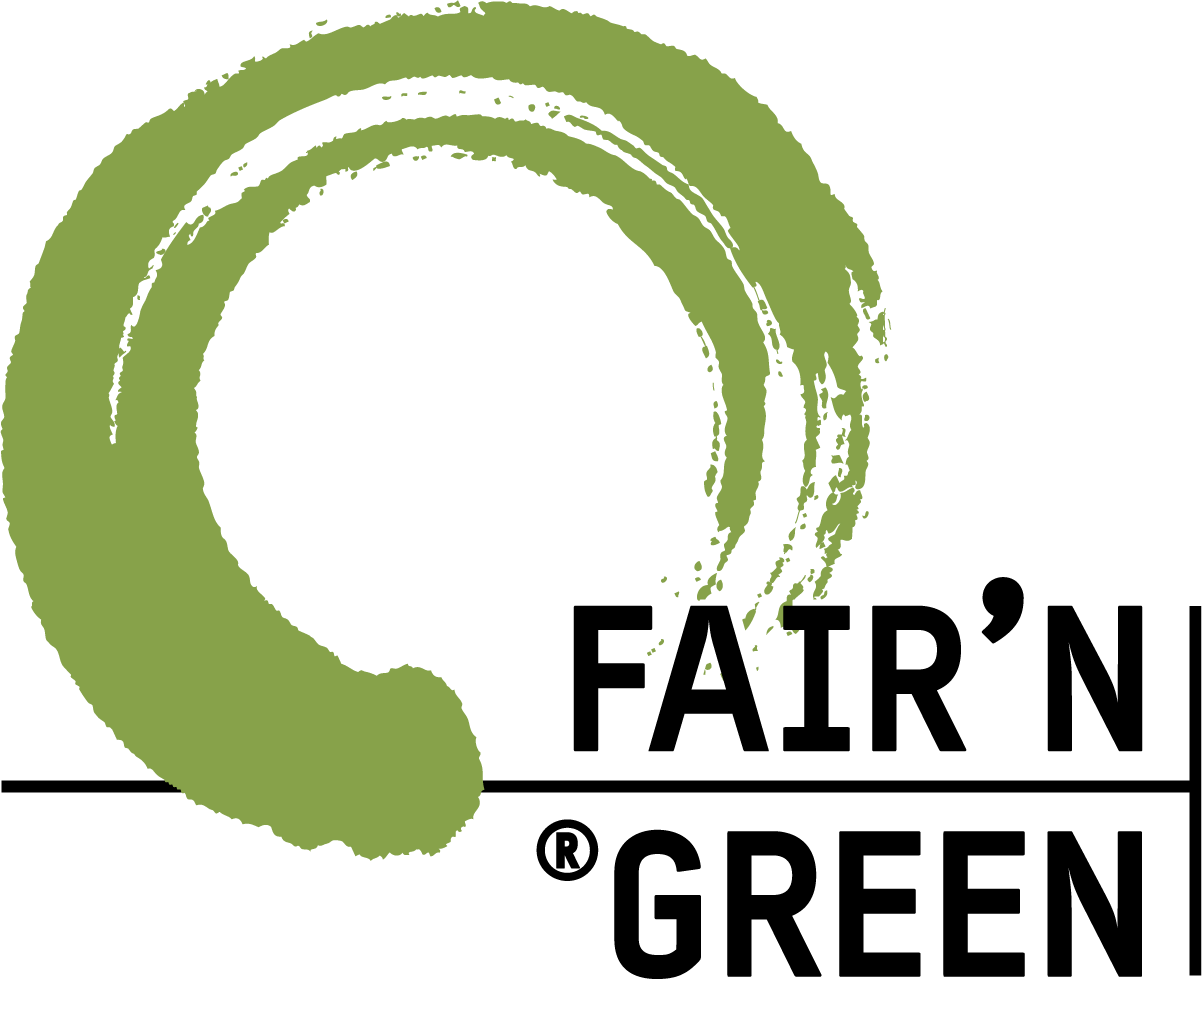 Logo FAIRN GREEN png weiss